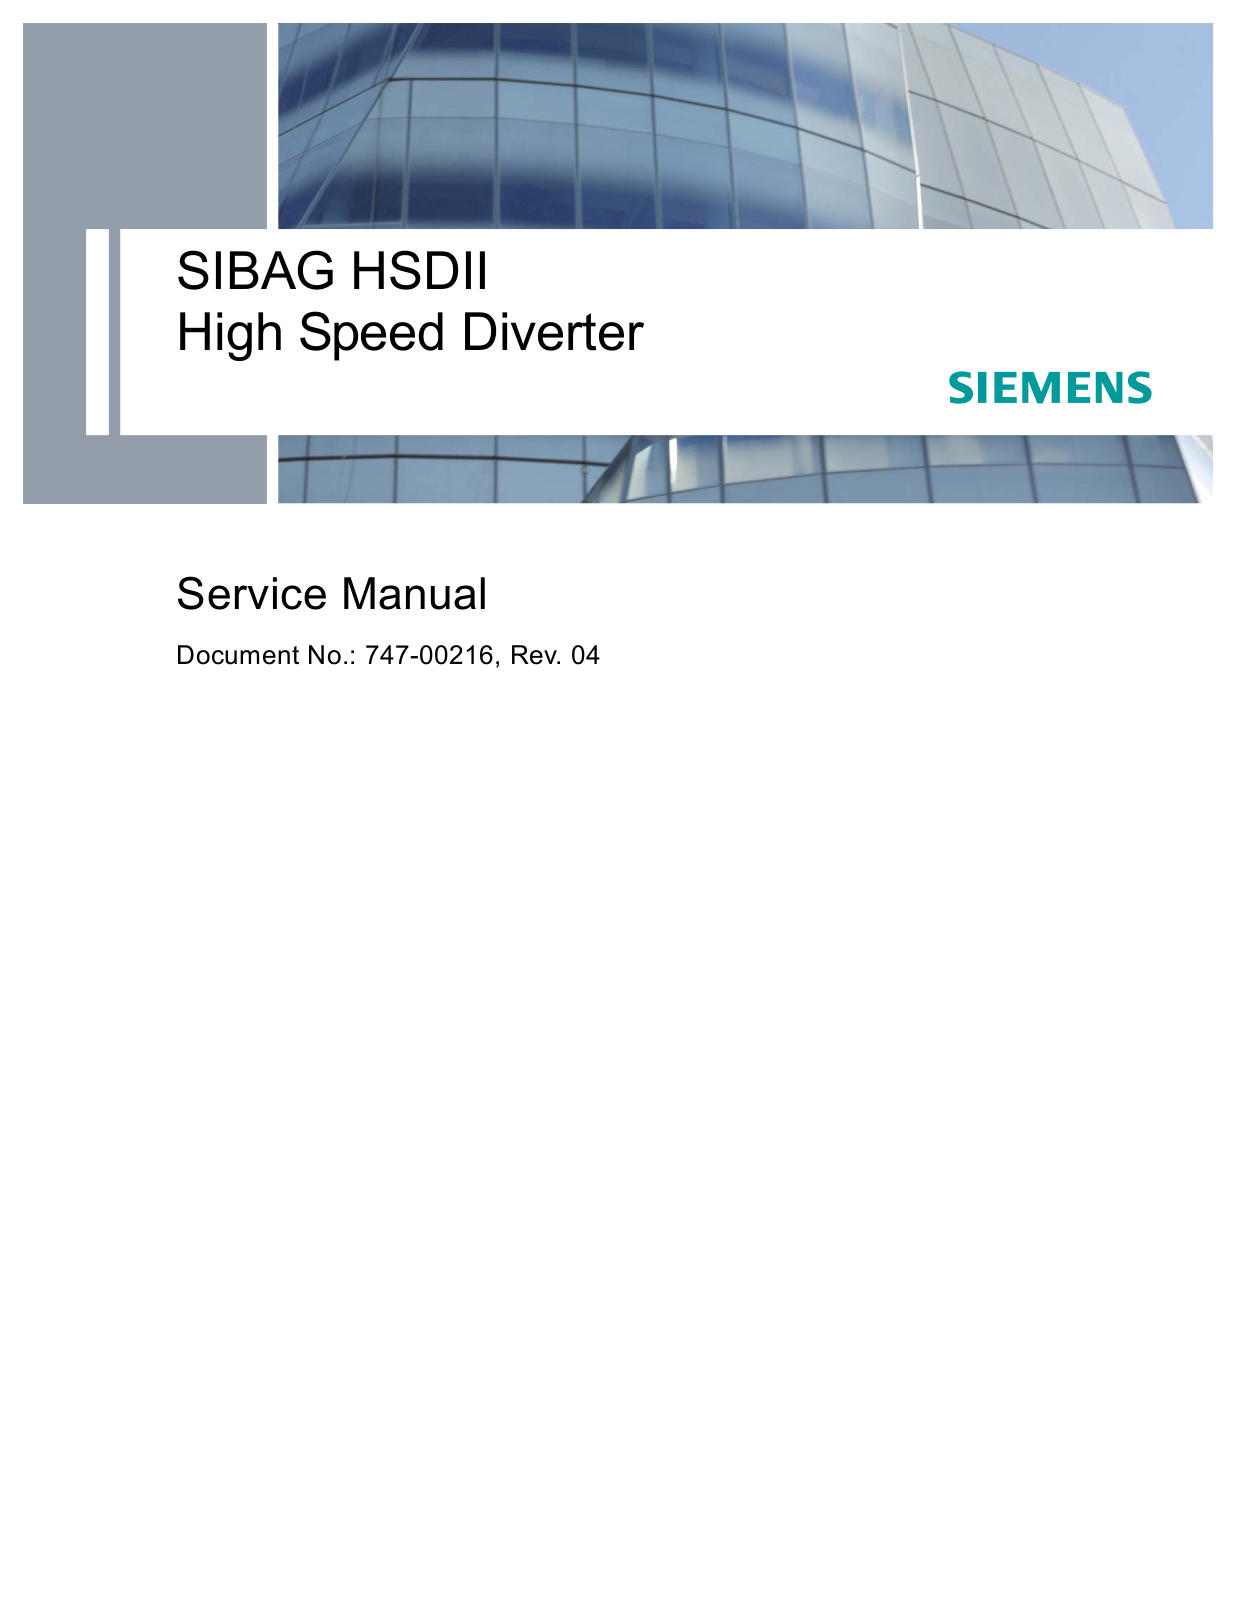 Siemens HSDII Service Manual